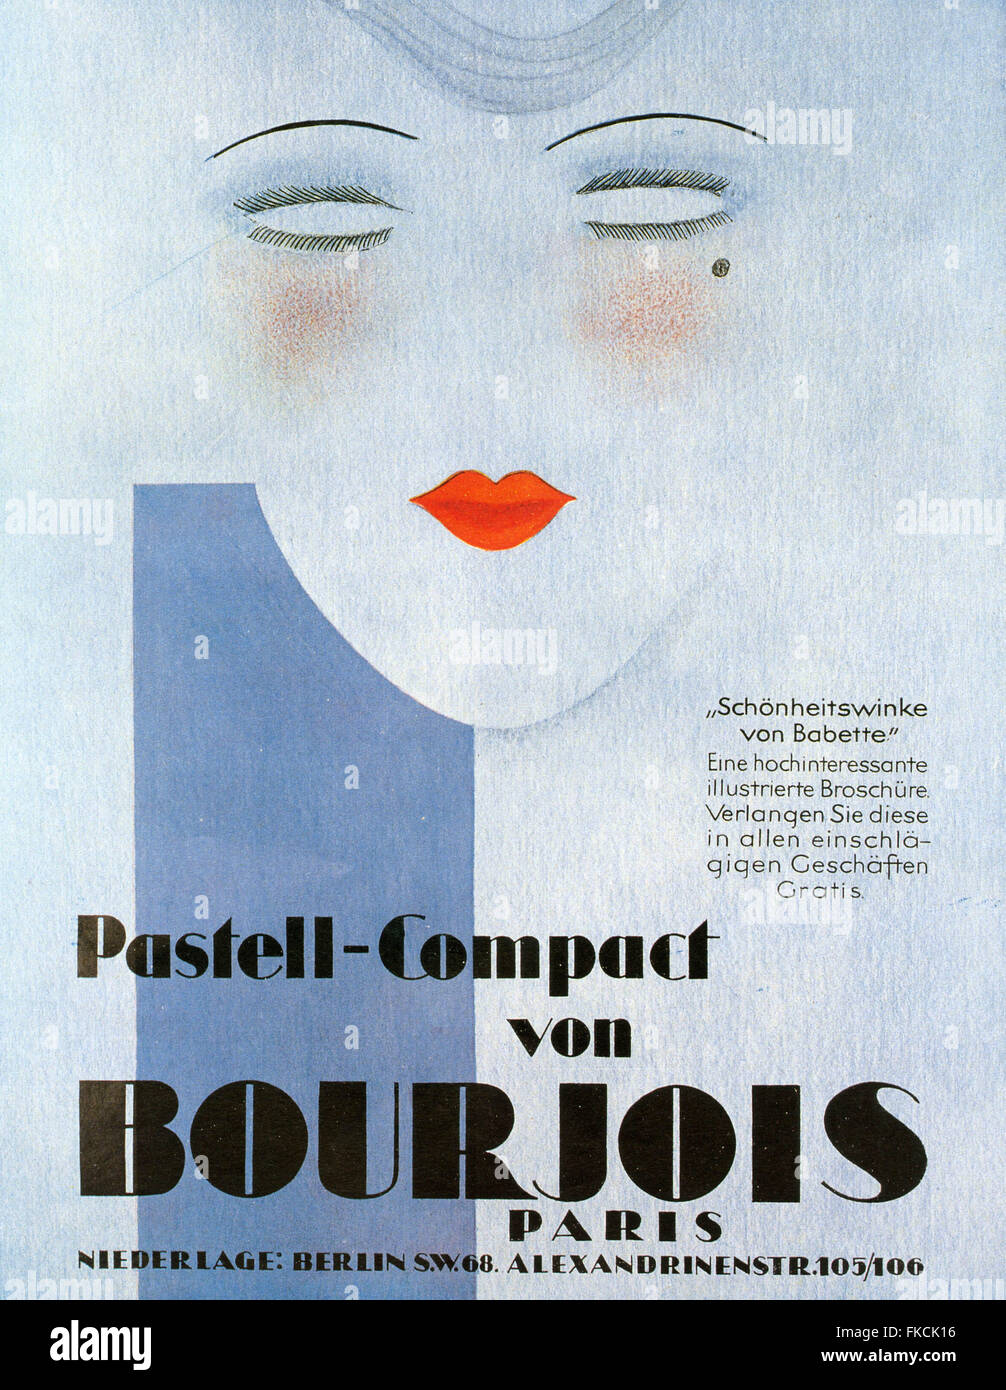 1920er Jahren Deutschland Bourjois Poster Stockfoto